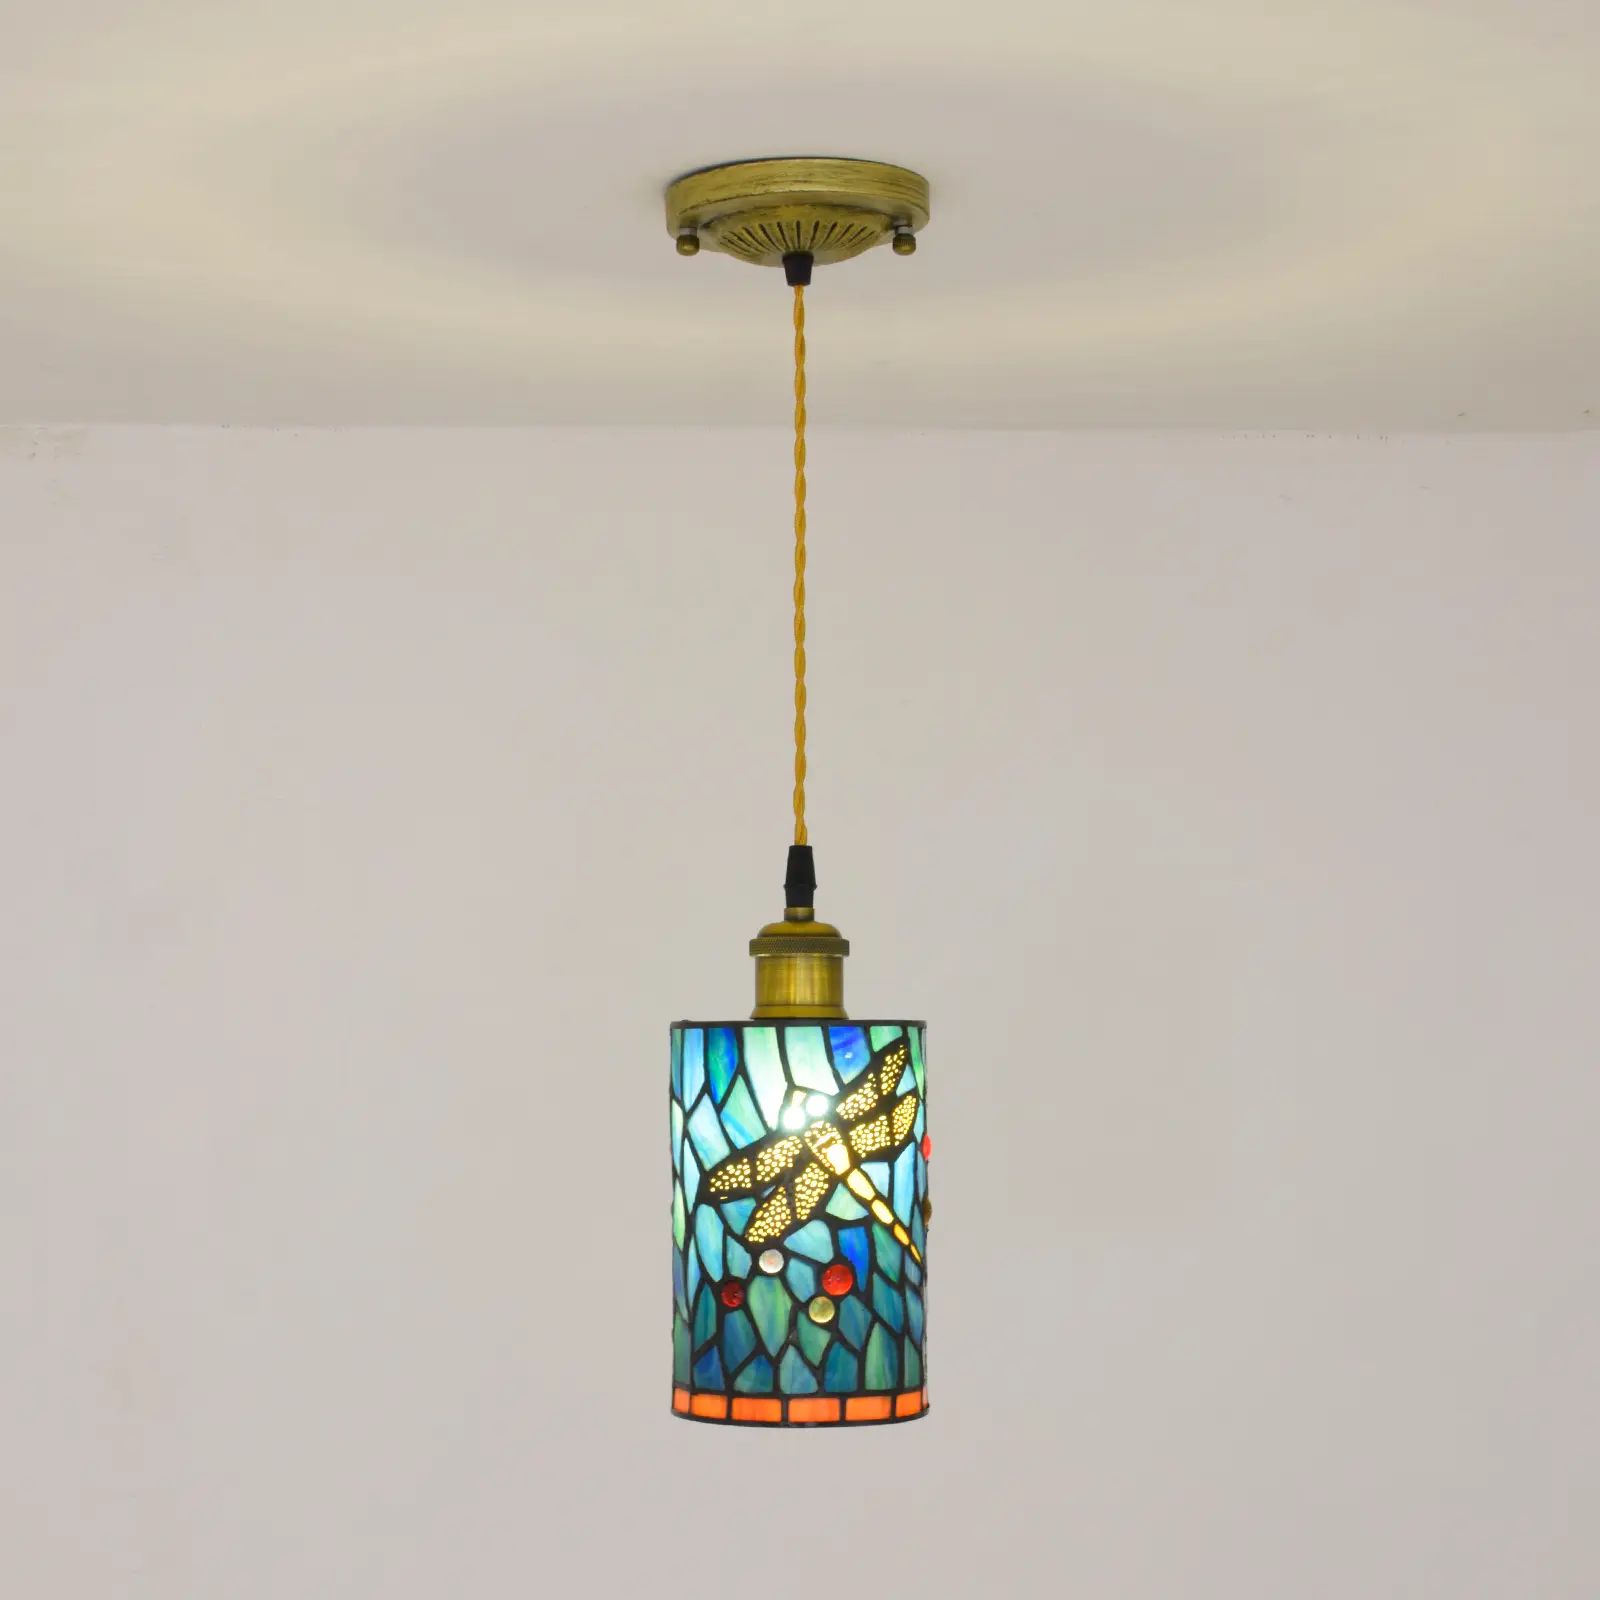 P103 Tiffany cilindro led lampade a sospensione per tavolo da pranzo lampada a sospensione in vetro colorato libellula in stile rustico per isola cucina